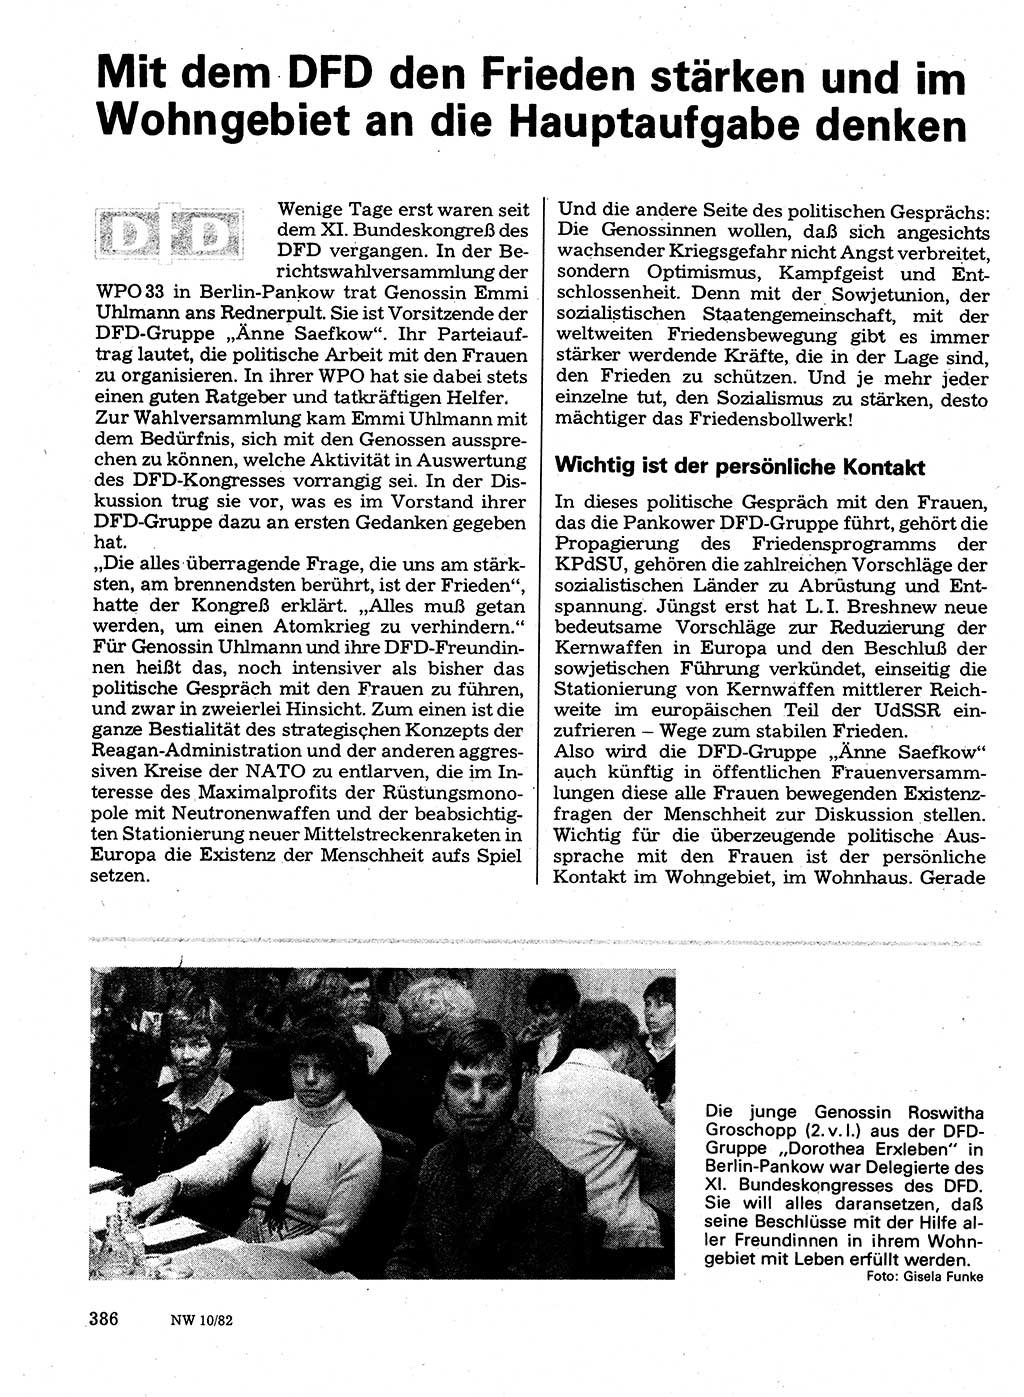 Neuer Weg (NW), Organ des Zentralkomitees (ZK) der SED (Sozialistische Einheitspartei Deutschlands) für Fragen des Parteilebens, 37. Jahrgang [Deutsche Demokratische Republik (DDR)] 1982, Seite 386 (NW ZK SED DDR 1982, S. 386)